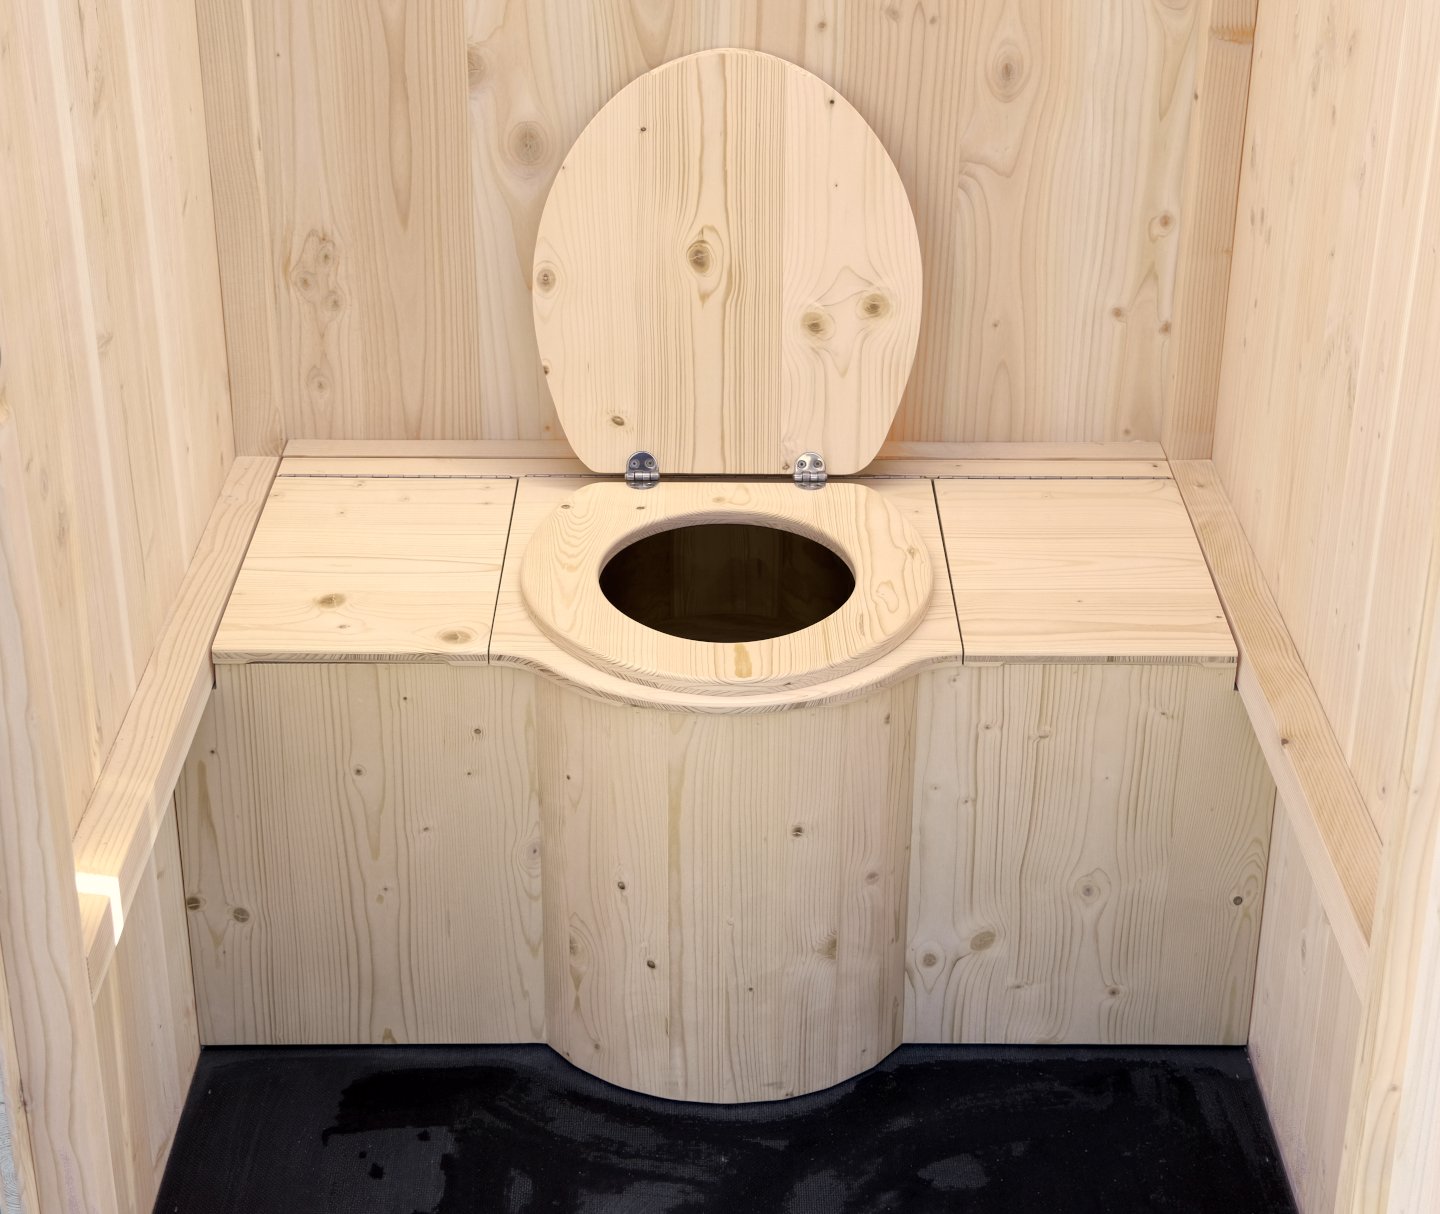 Tabouret de toilette physiologique ergonomique Étape pour Wc